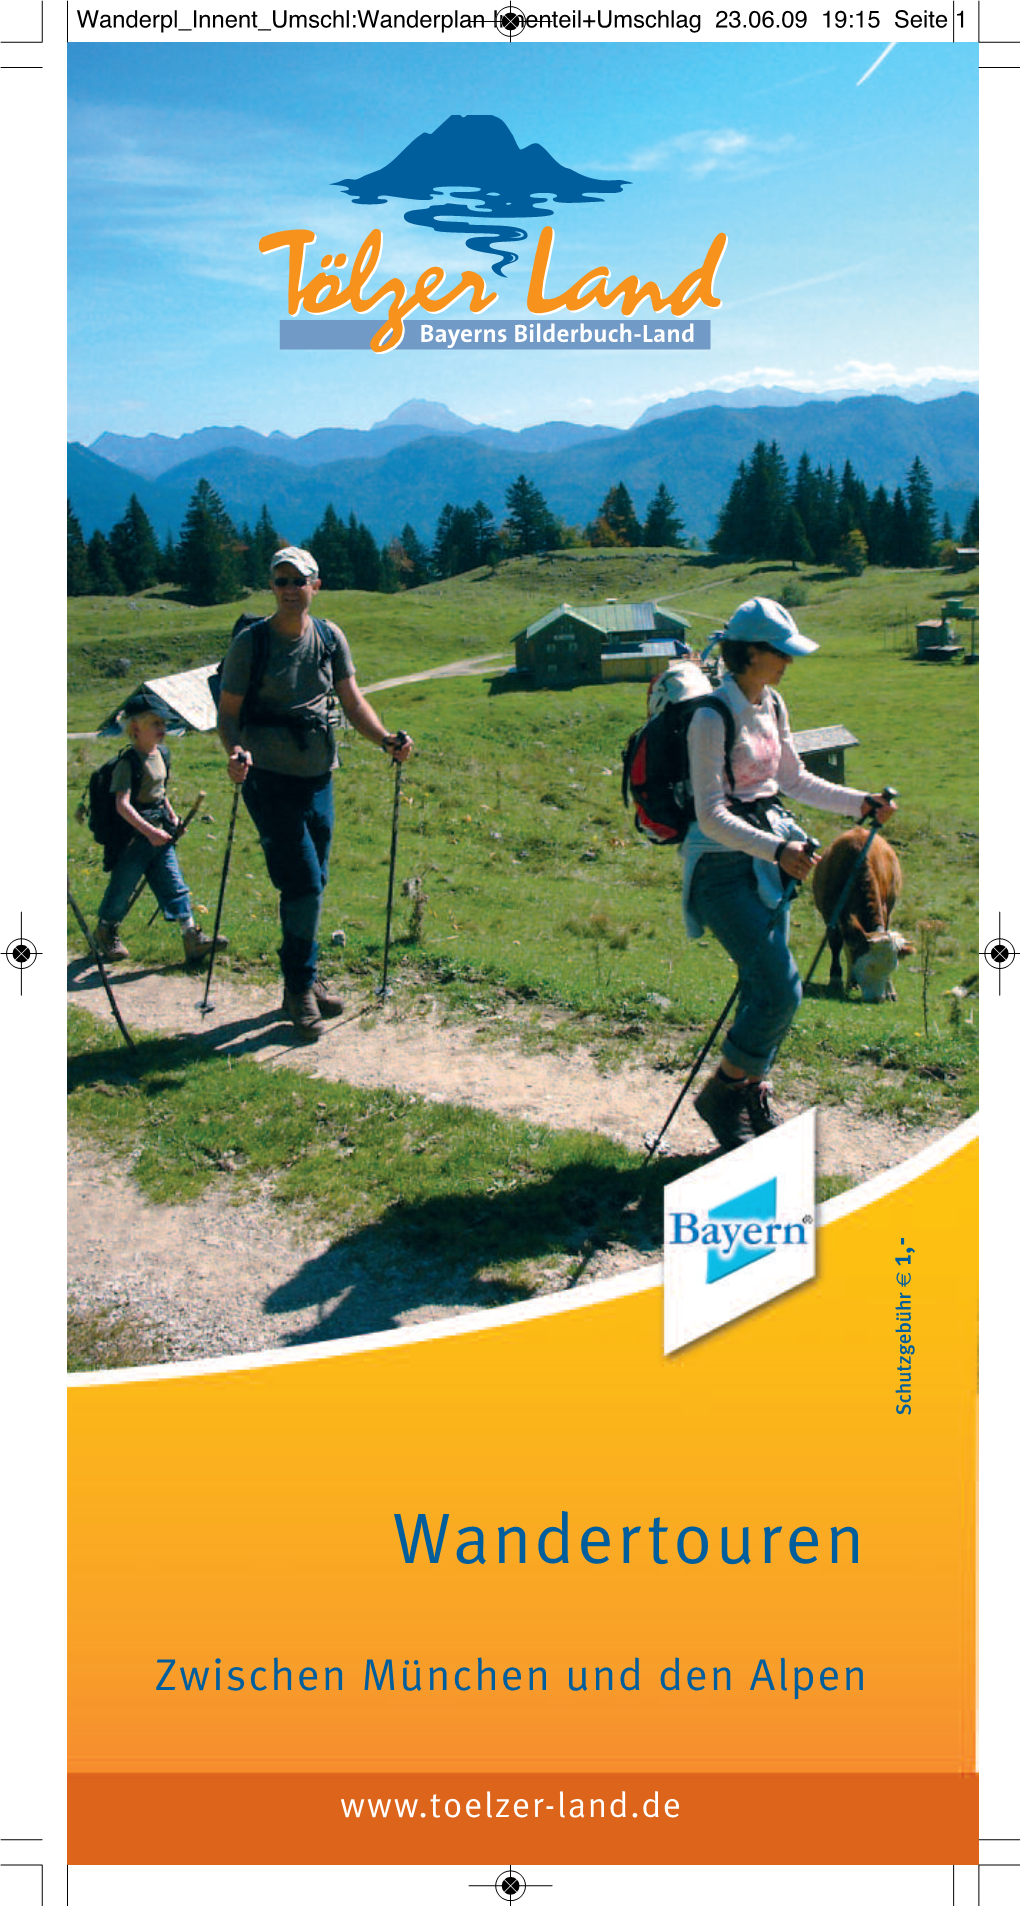 Wanderplan Innenteil+Umschlag 23.06.09 19:15 Seite 1 - , 1 €